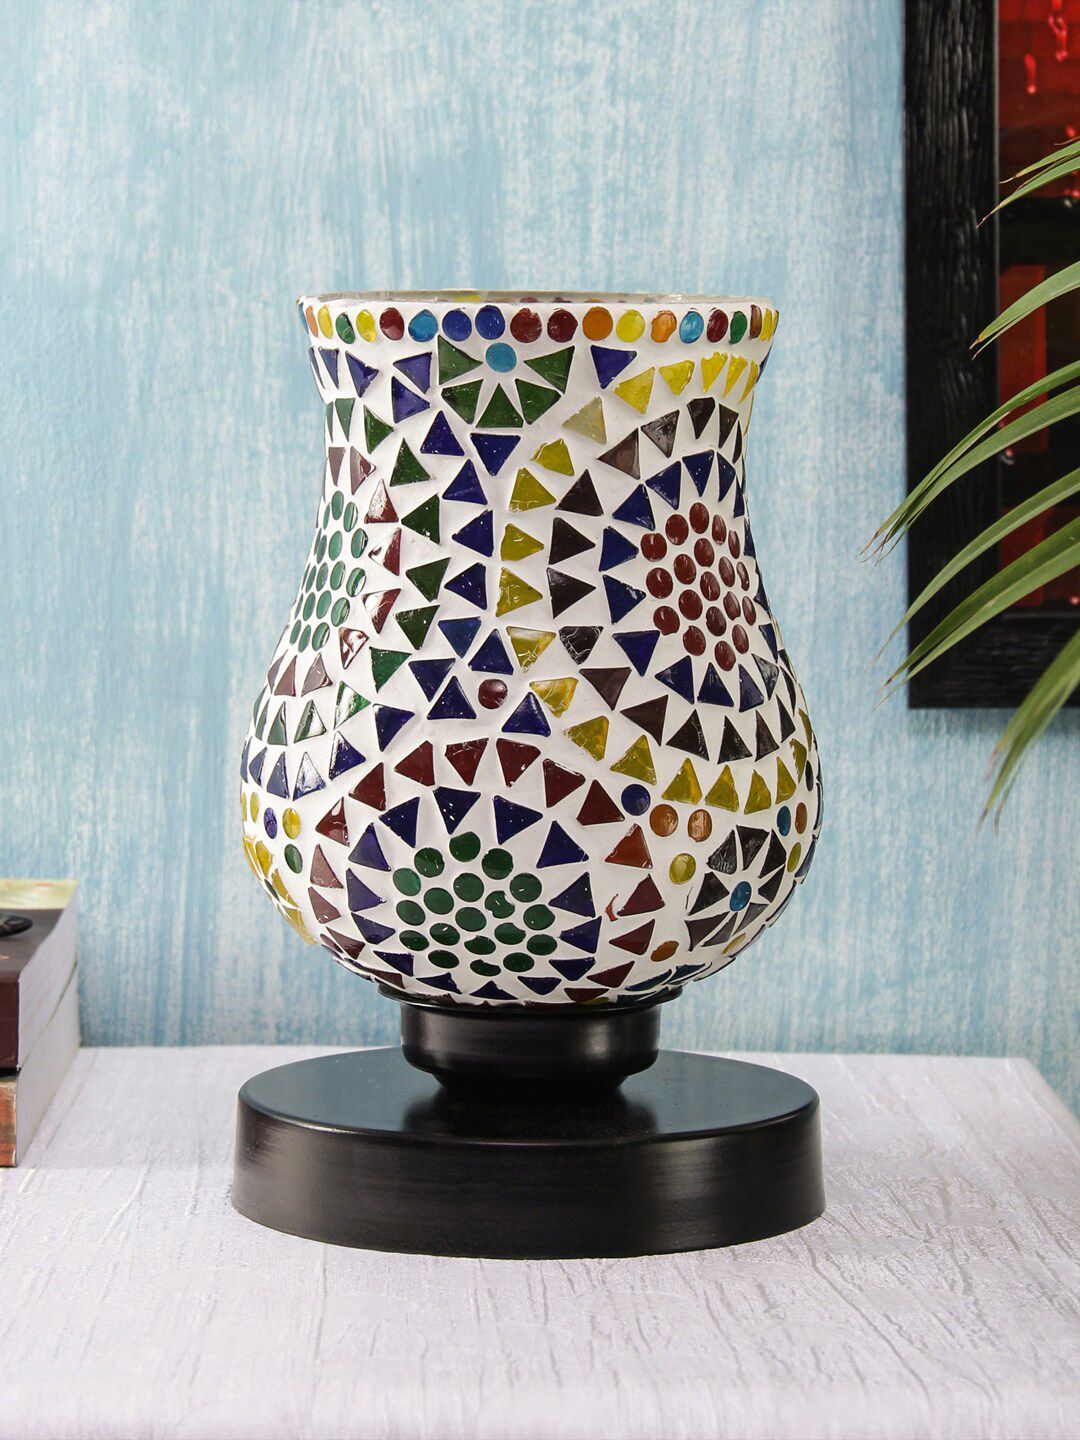 Devansh Multicolored Mosaic Table Lamp Price in India